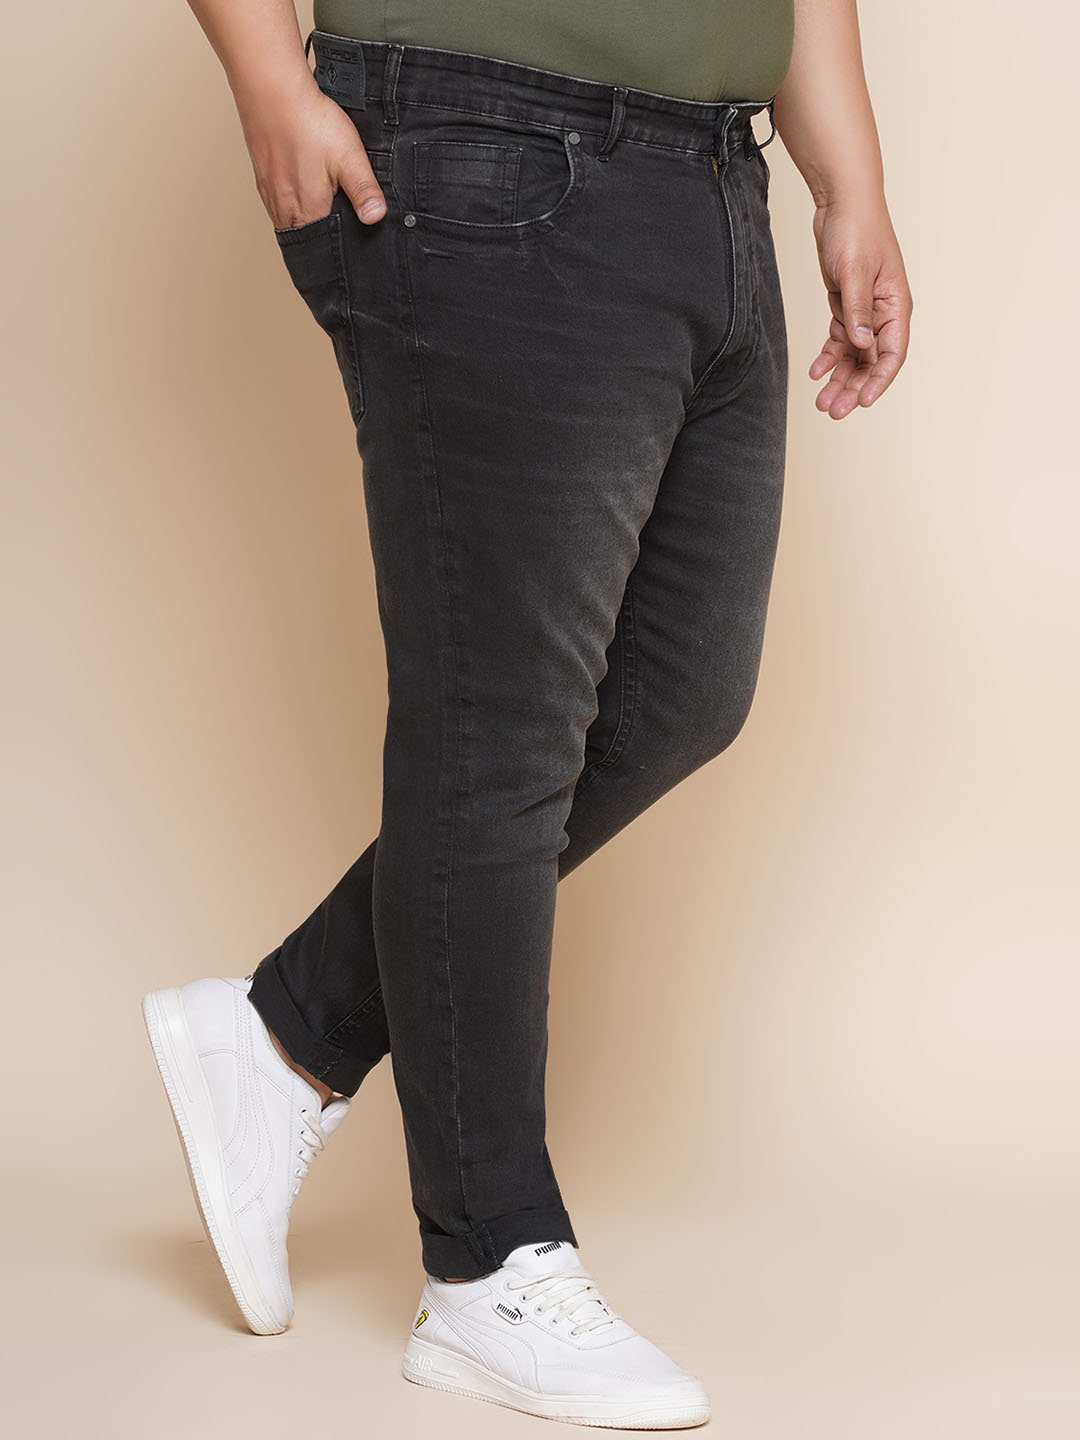 bottomwear/jeans/JPJ12351/jpj12351-3.jpg